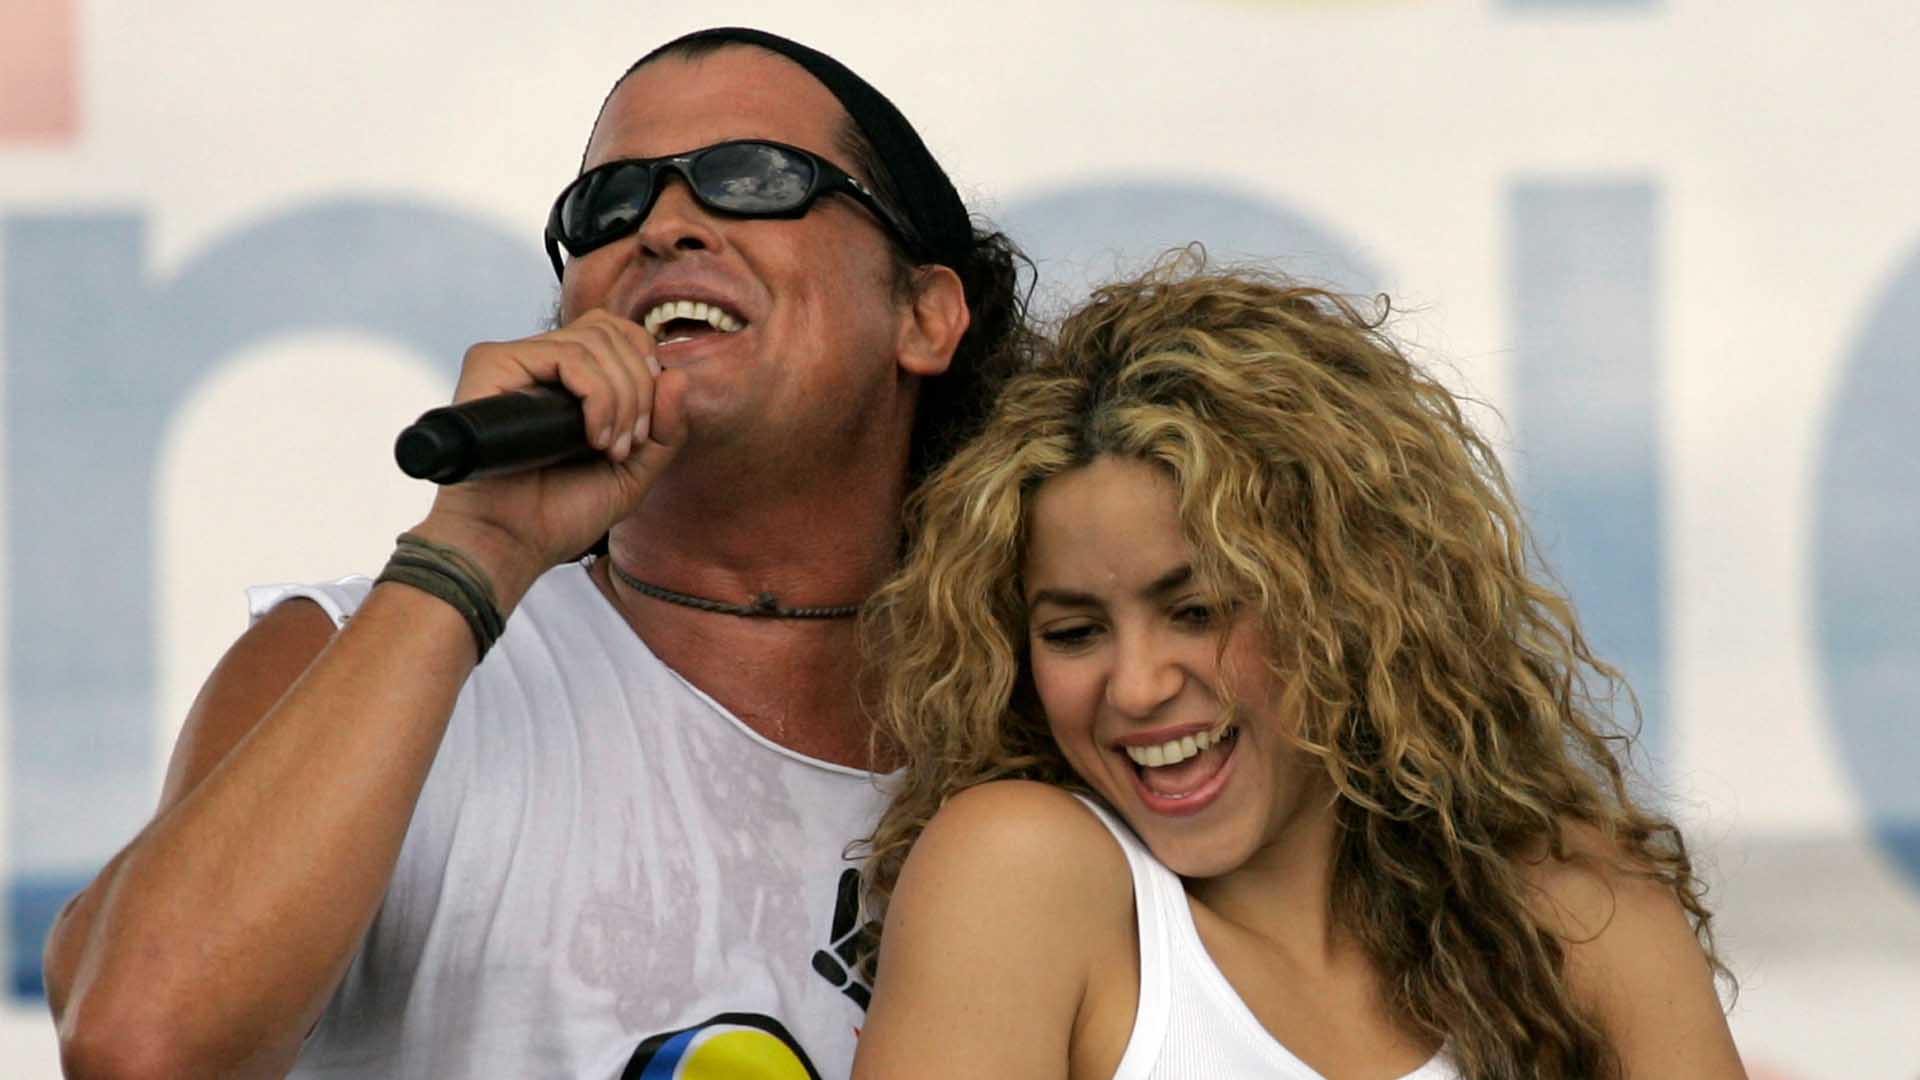 Desestimada la denuncia de plagio contra Shakira y Carlos Vives por la canción ‘La bicicleta’